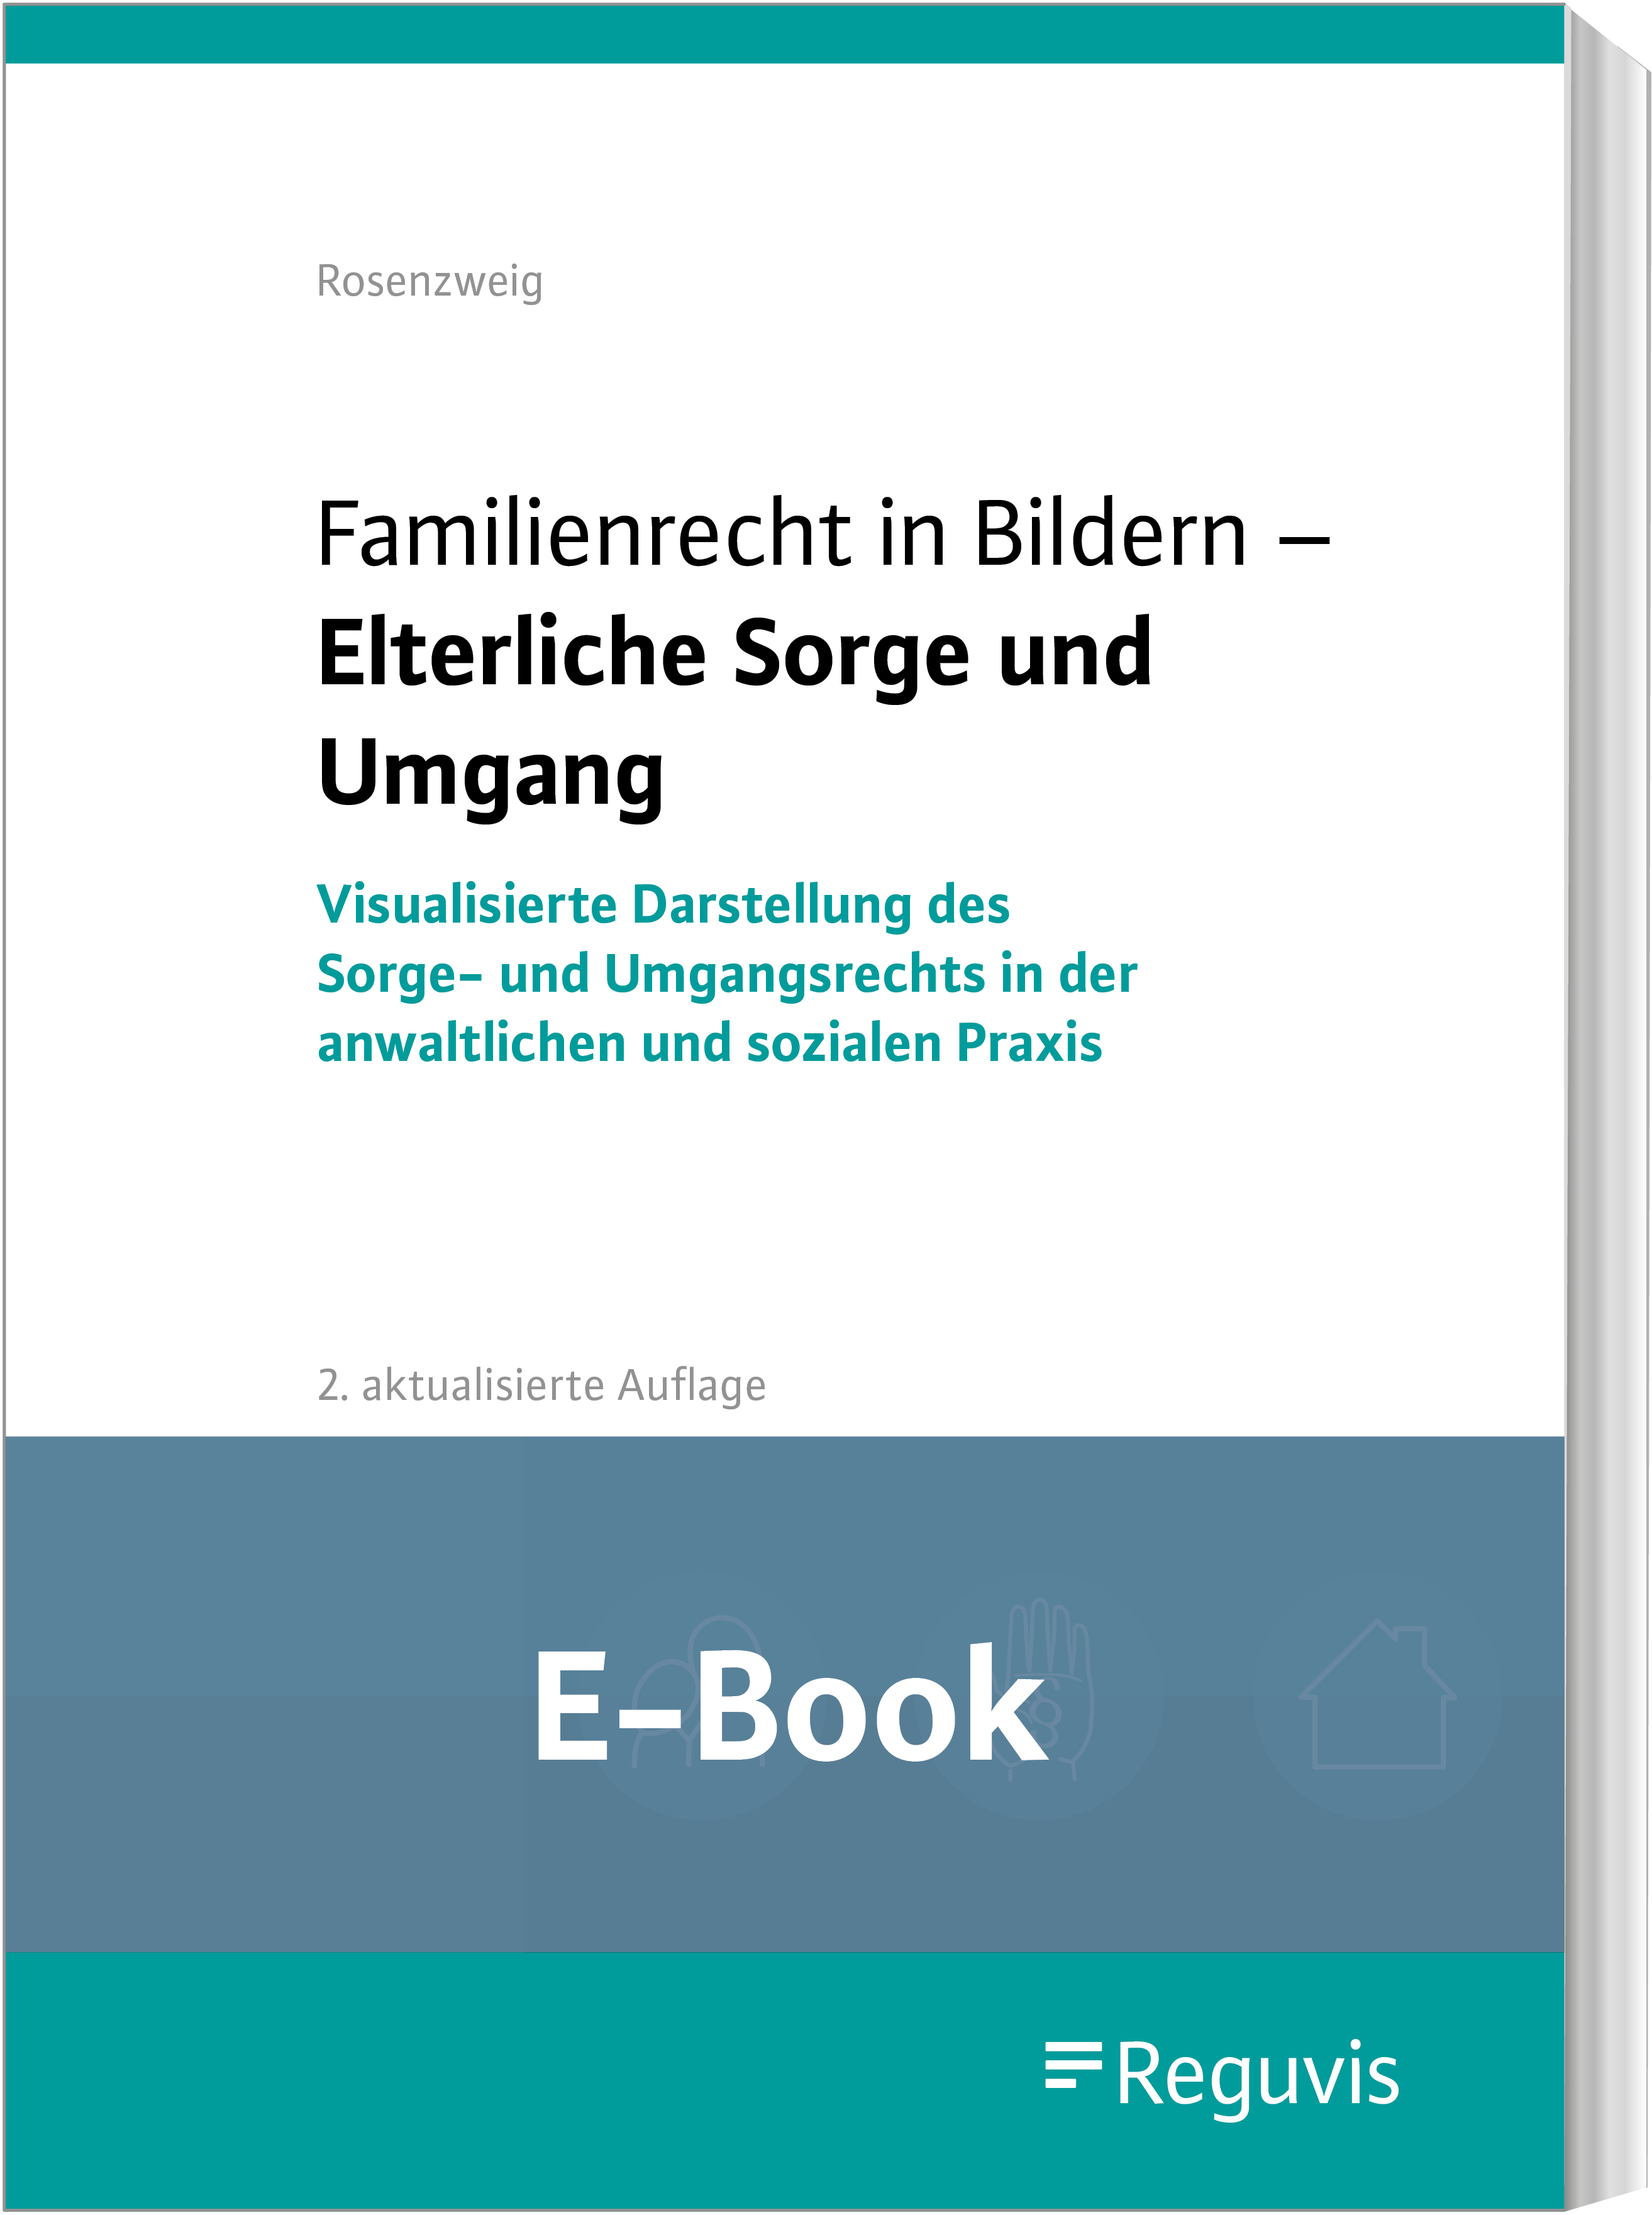 Rosenzweig; Familienrecht in Bildern - Elterl. Sorge E-Book